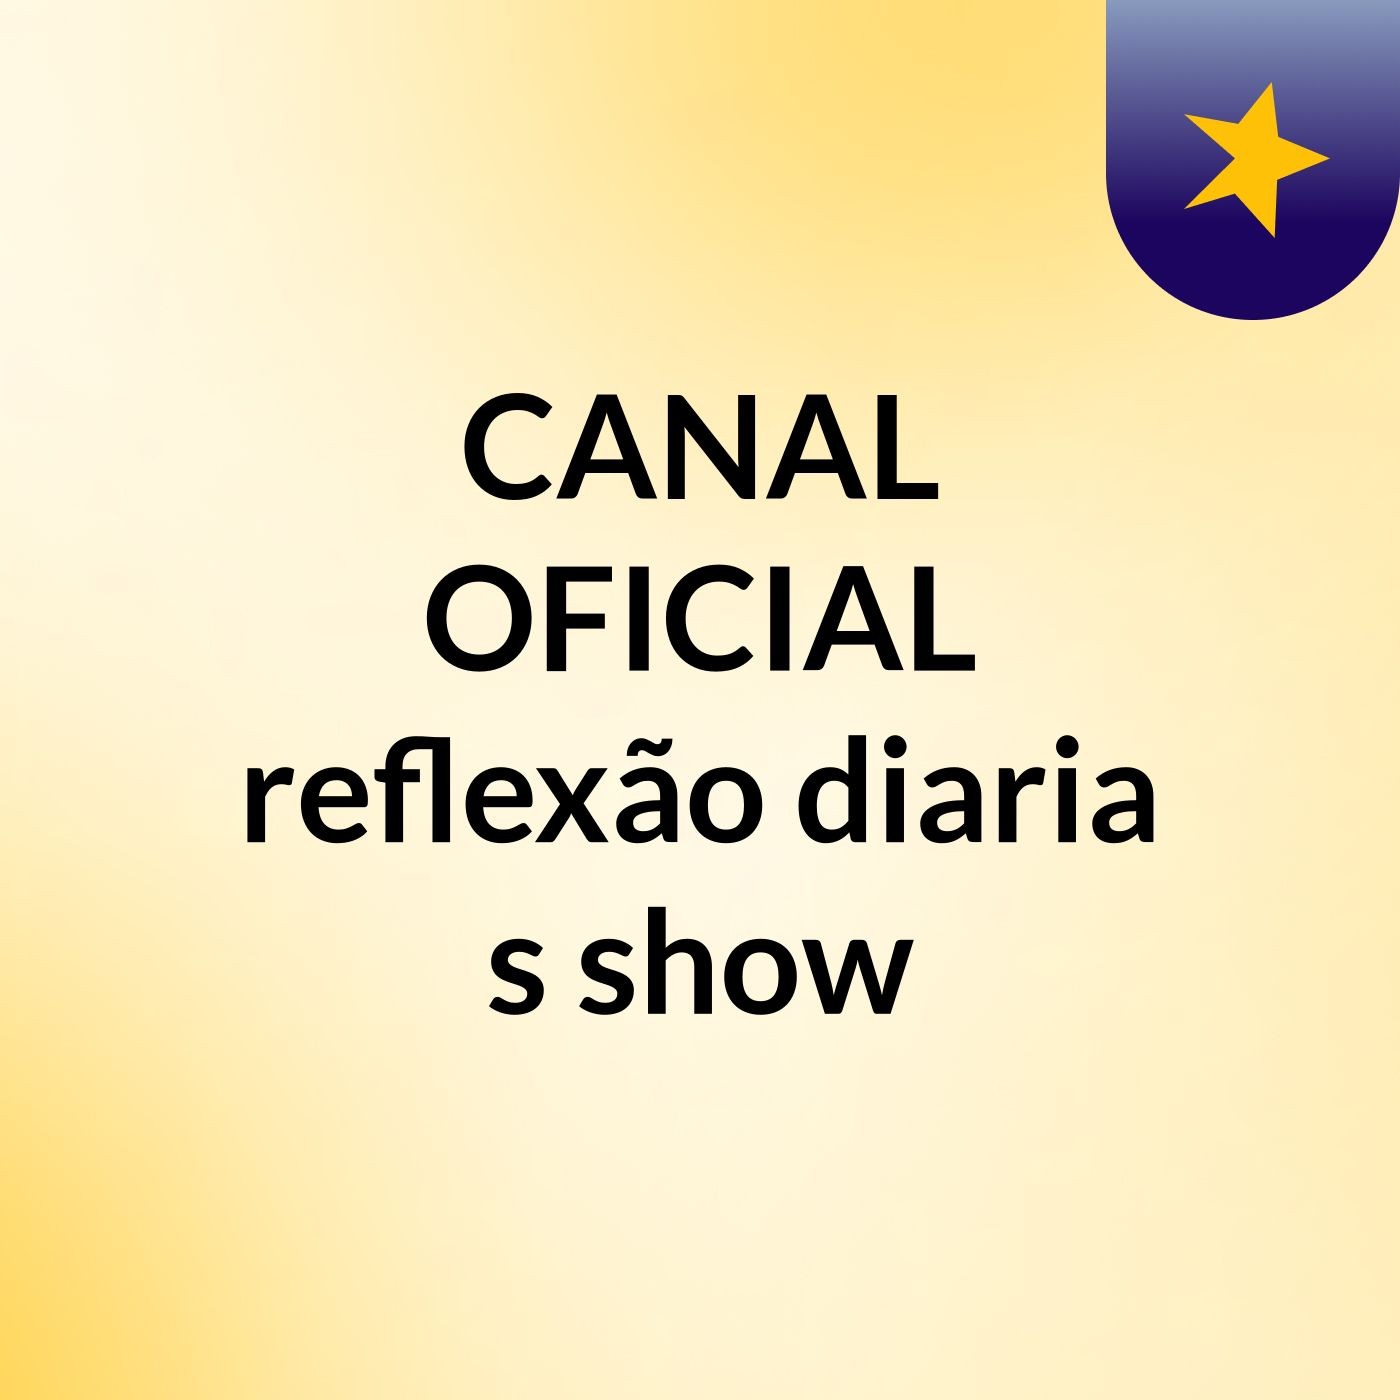 CANAL OFICIAL reflexão diaria's show